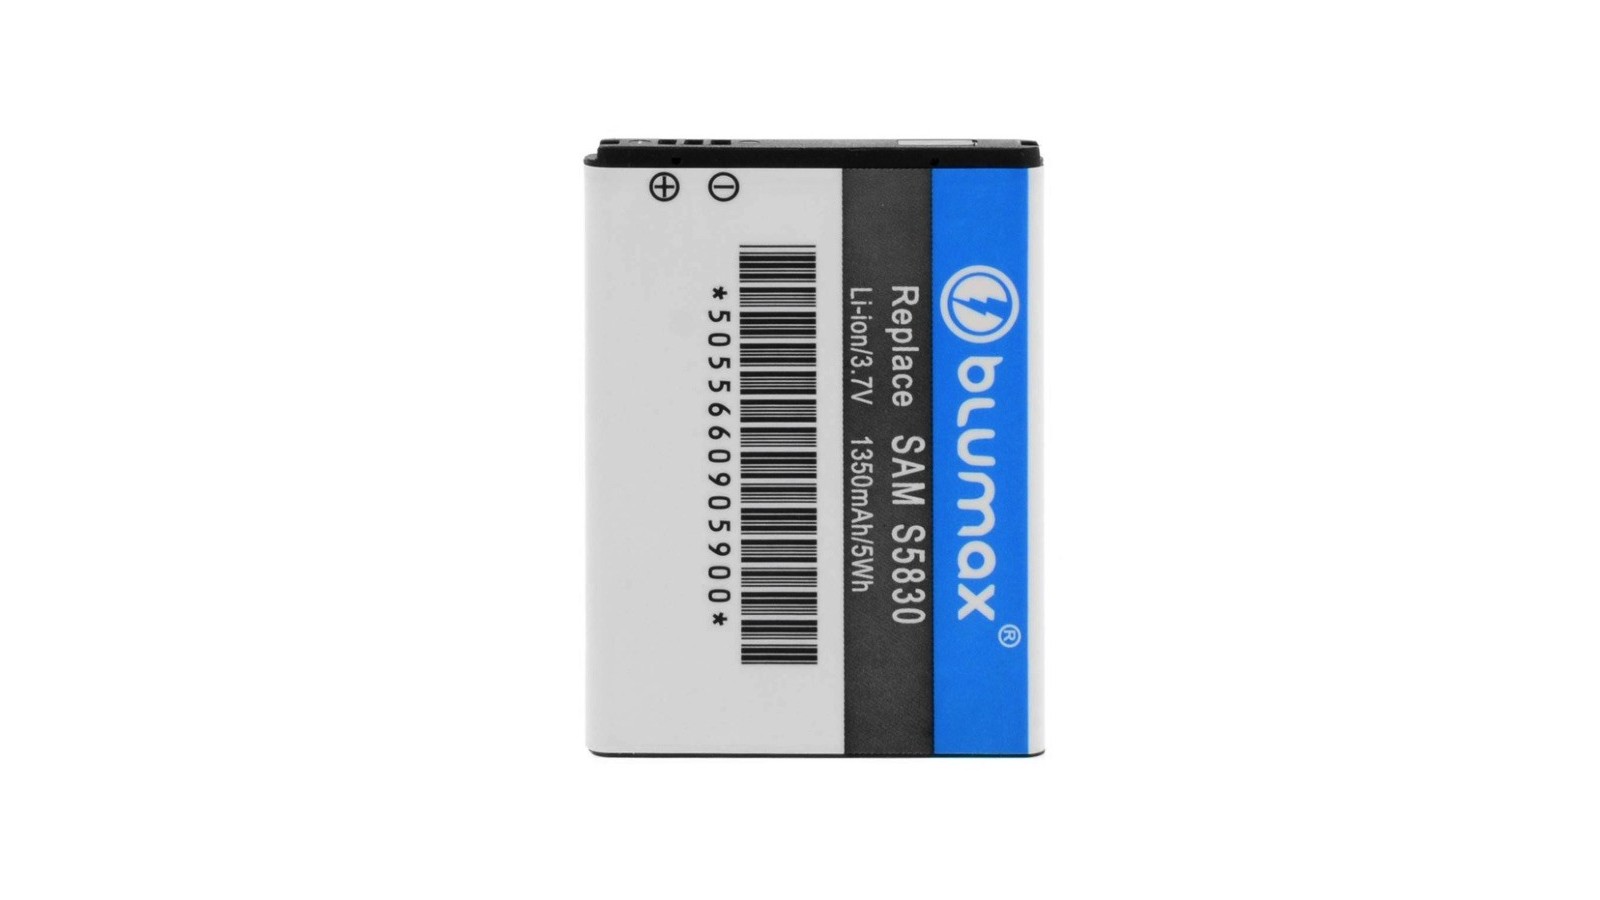 Batteria per Samsung Galaxy Ace S5830 Galaxy Gio S5670